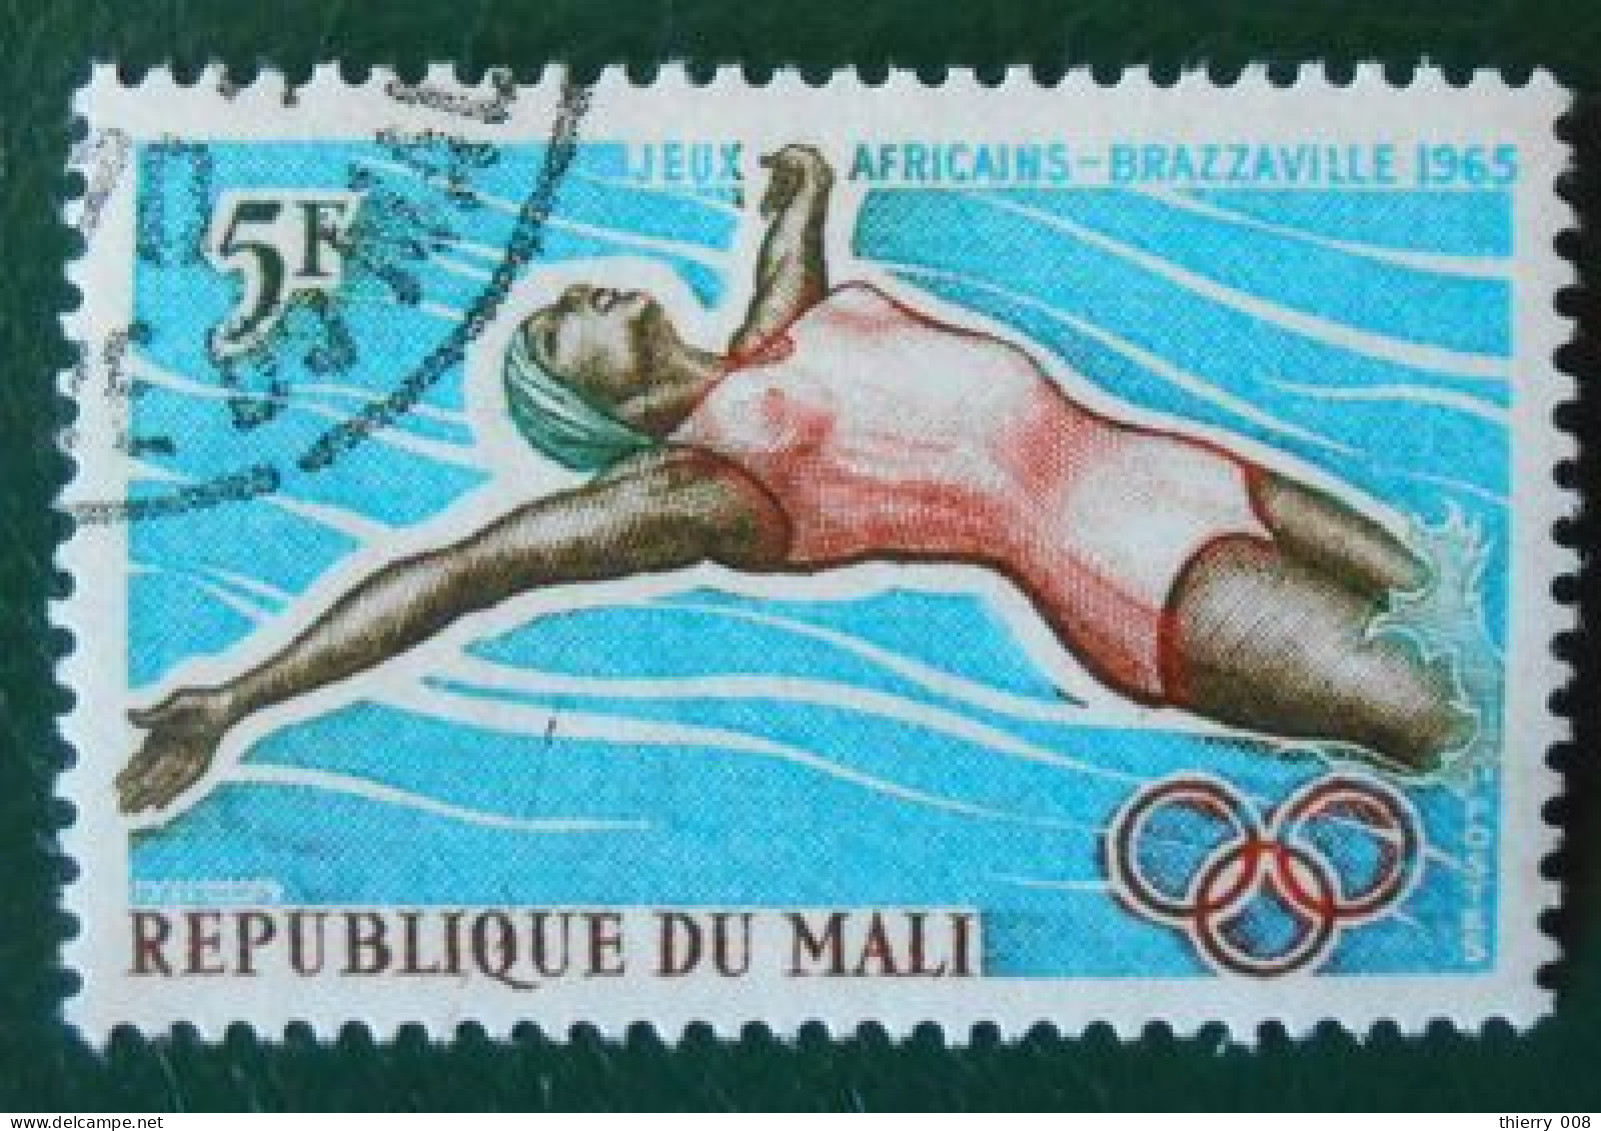 04 République Du Mali Jeux Africains Brazzaville 1965 Natation - Zwemmen